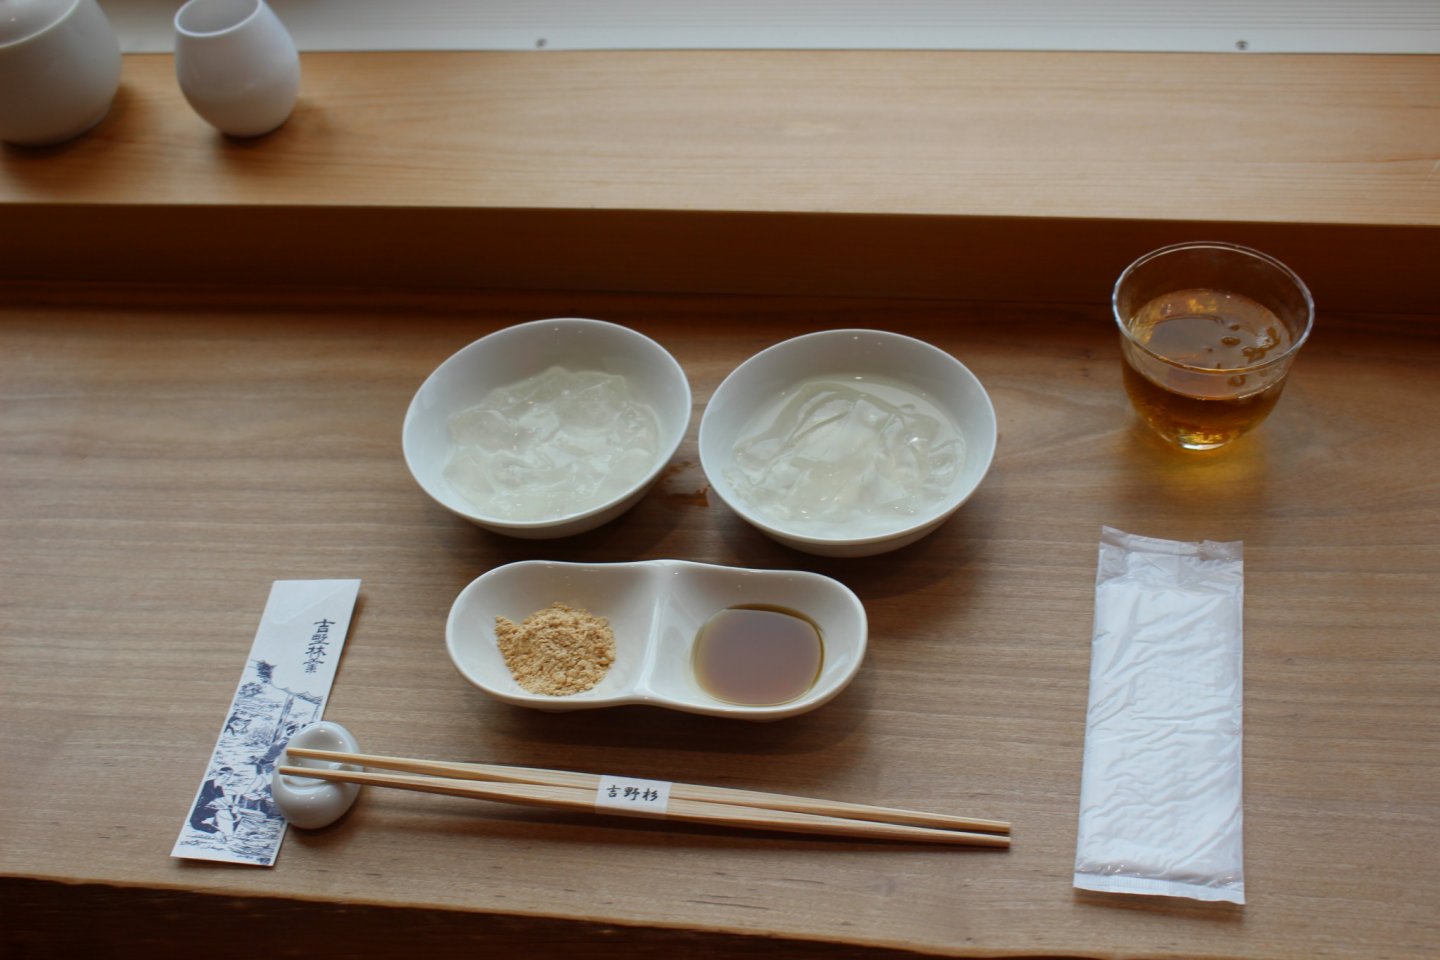 Set makanan penutup kudzu mochi, kudzu kiri dan secangkir teh. Camilan sore yang menyegarkan